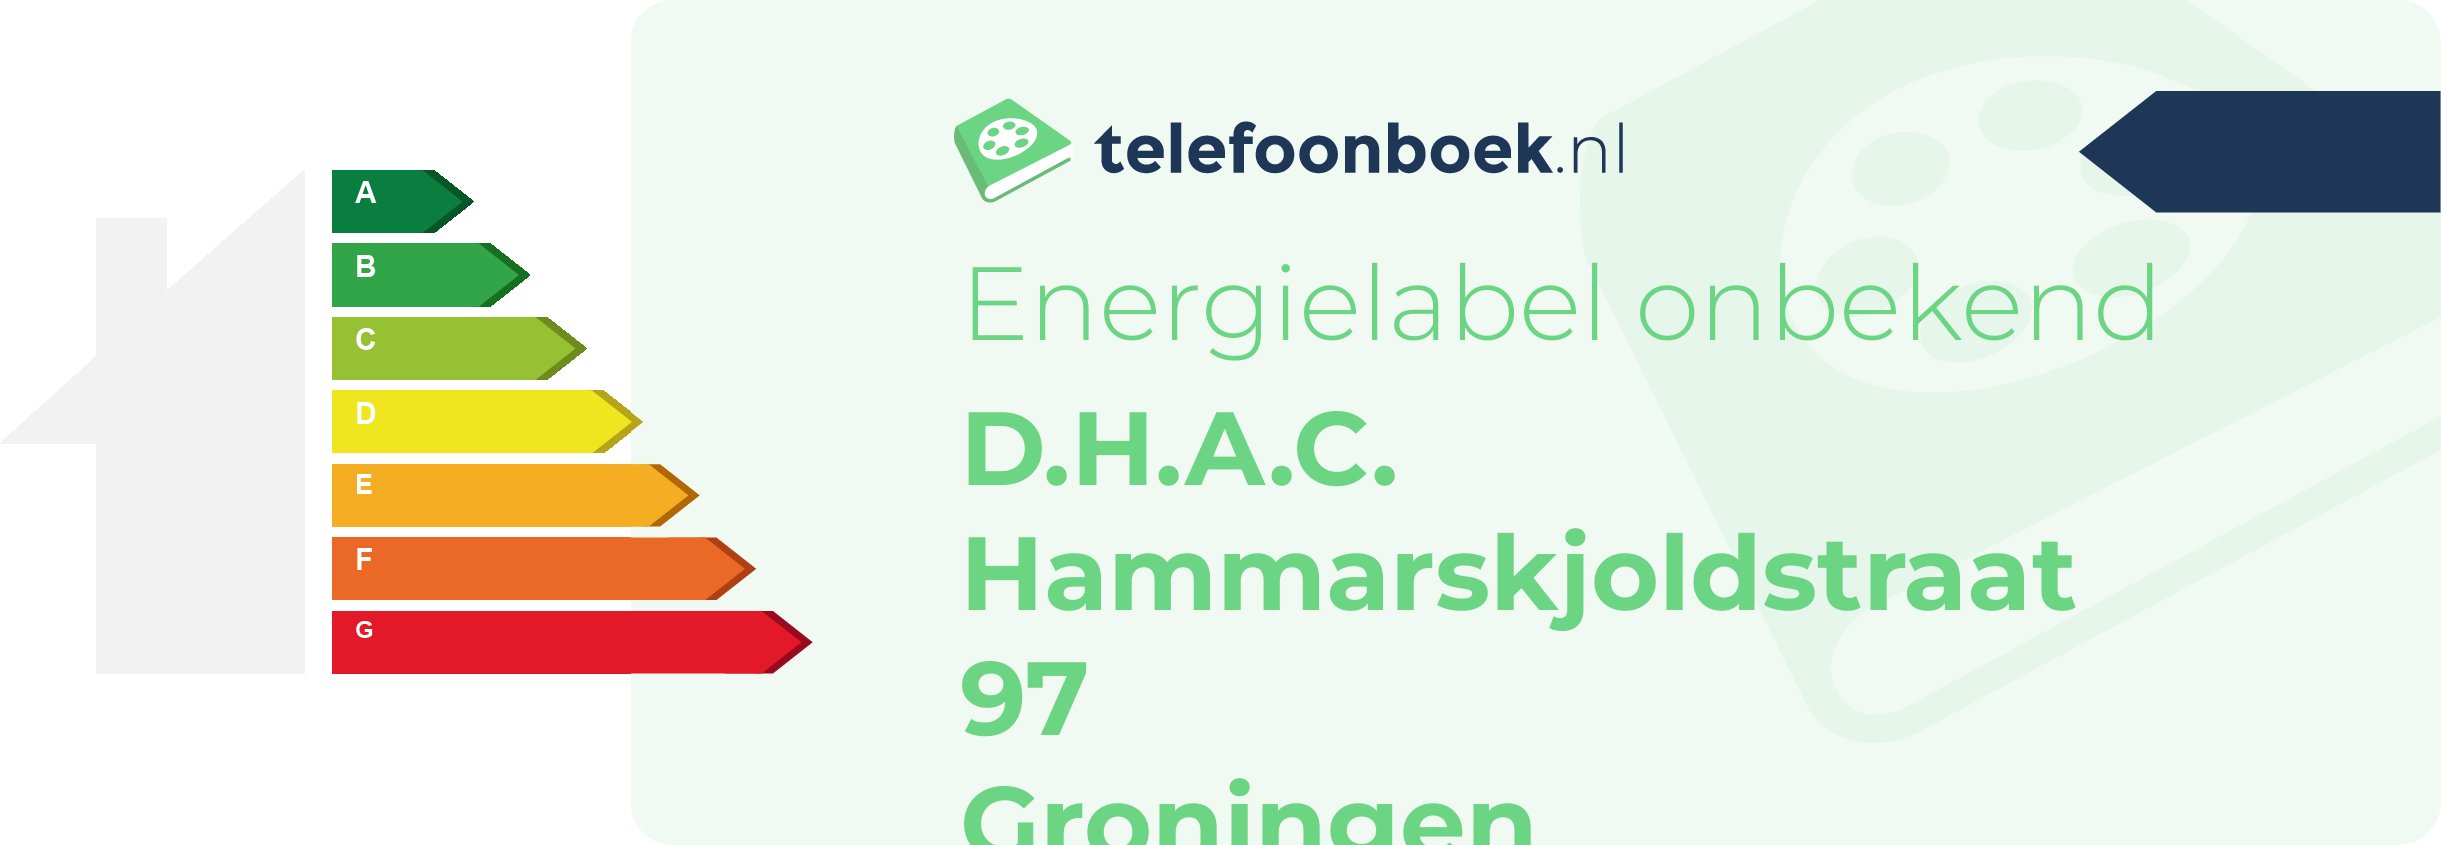 Energielabel D.H.A.C. Hammarskjoldstraat 97 Groningen